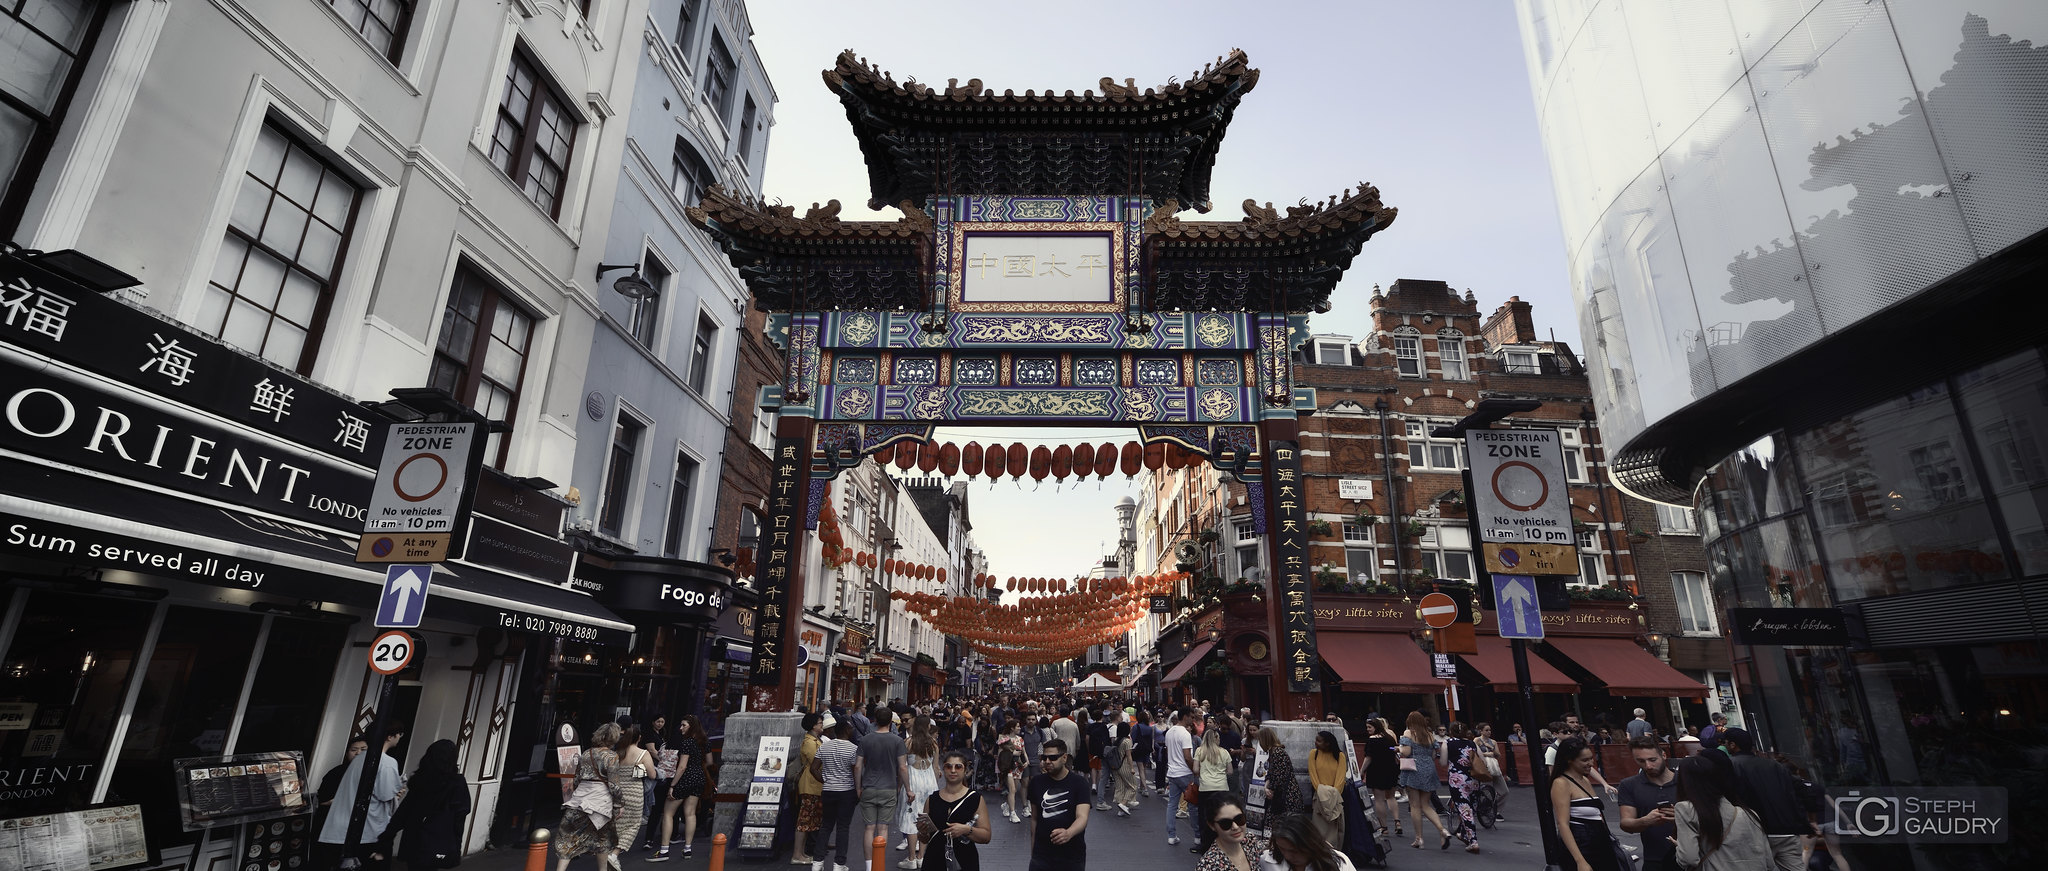 Chinatown London [Click to start slideshow]